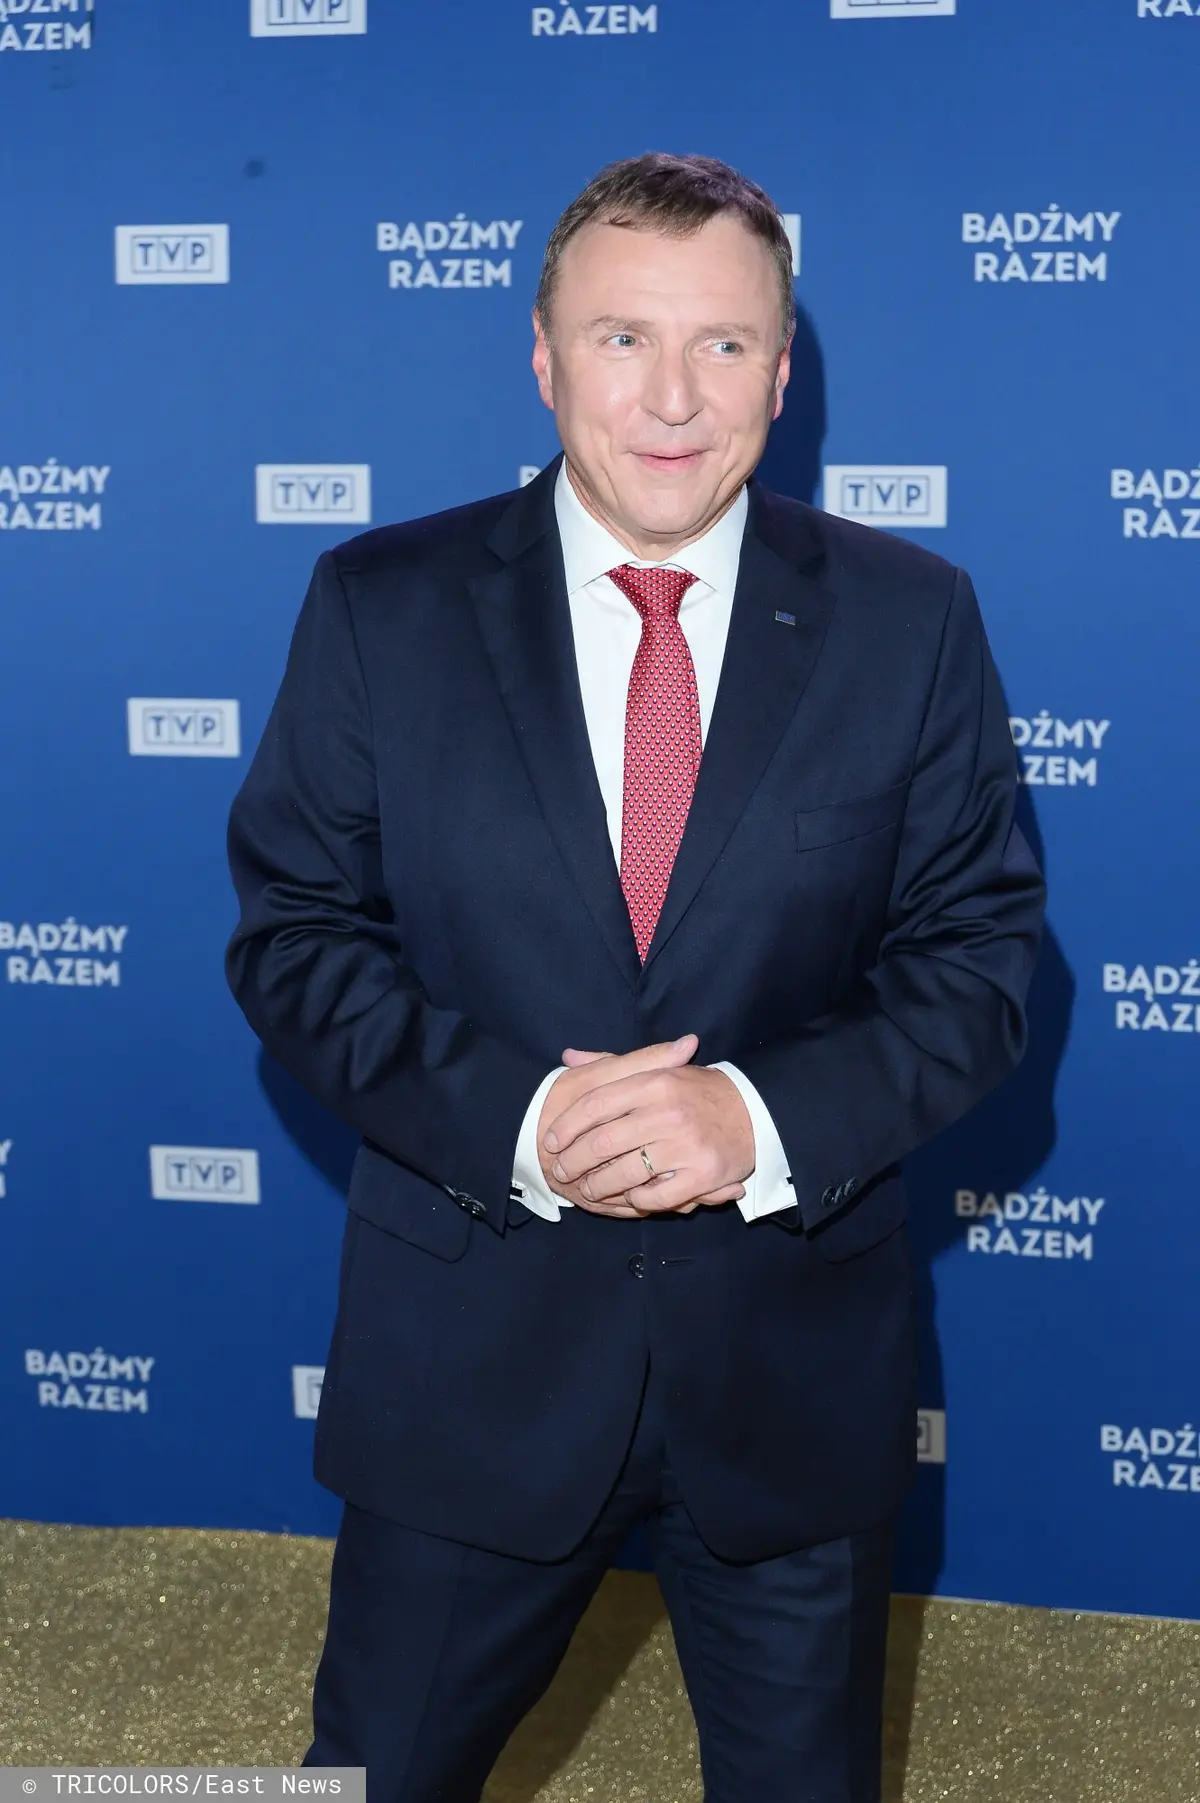 Uśmiechnięty Jacek Kurski w granatowym garniturze, białej koszuli i czerwonym krawacie na tle niebieskiej ścianki z logo TVP